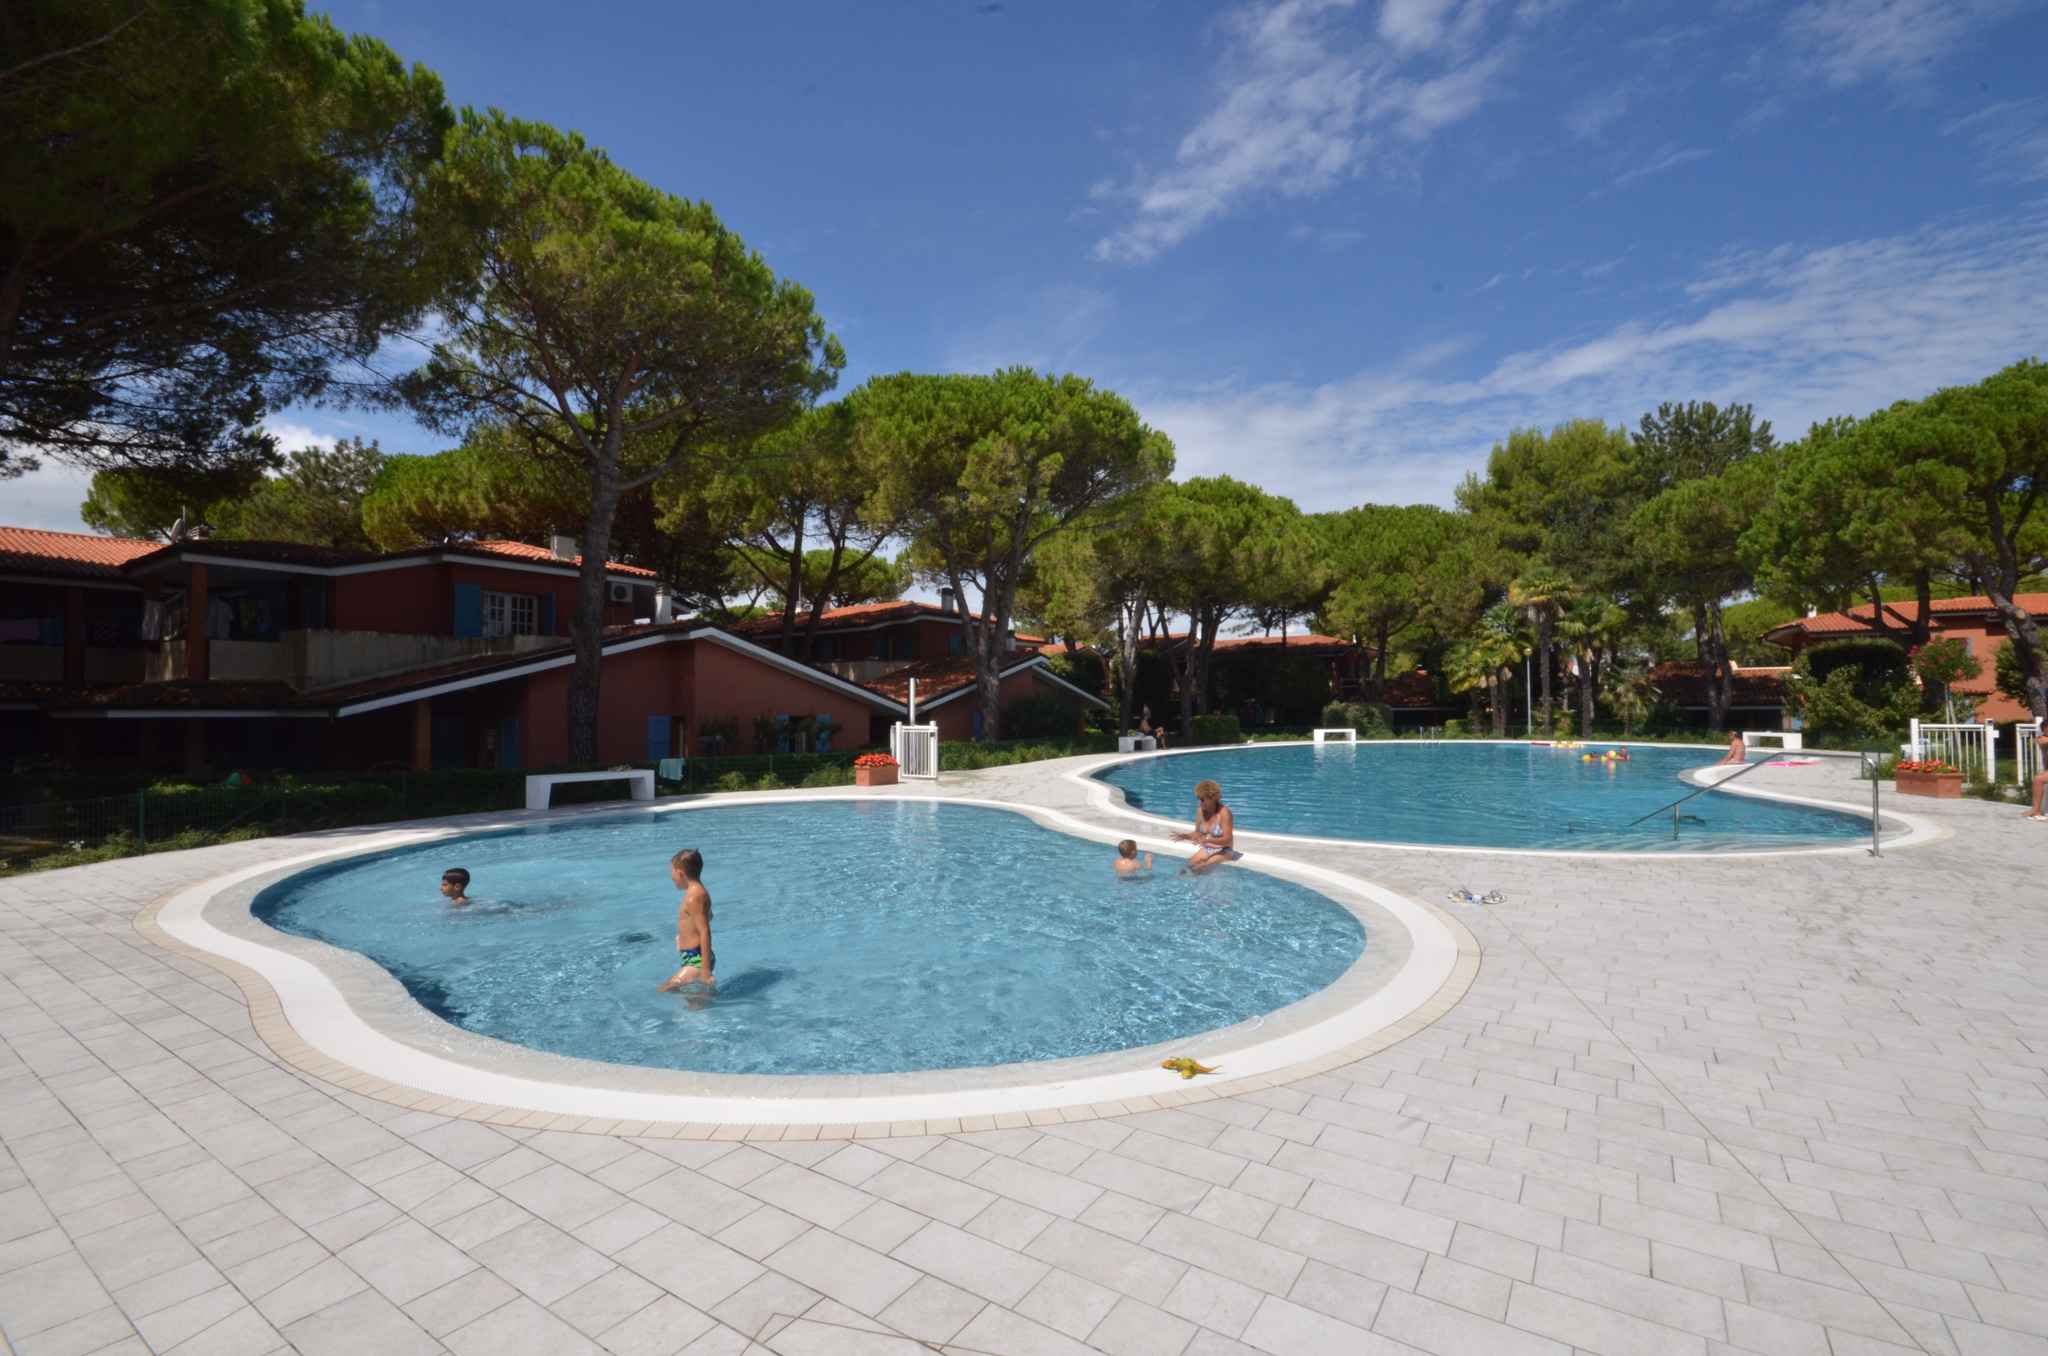 Ferienwohnung mit Pool und Kinderschwimmbecken  in Italien